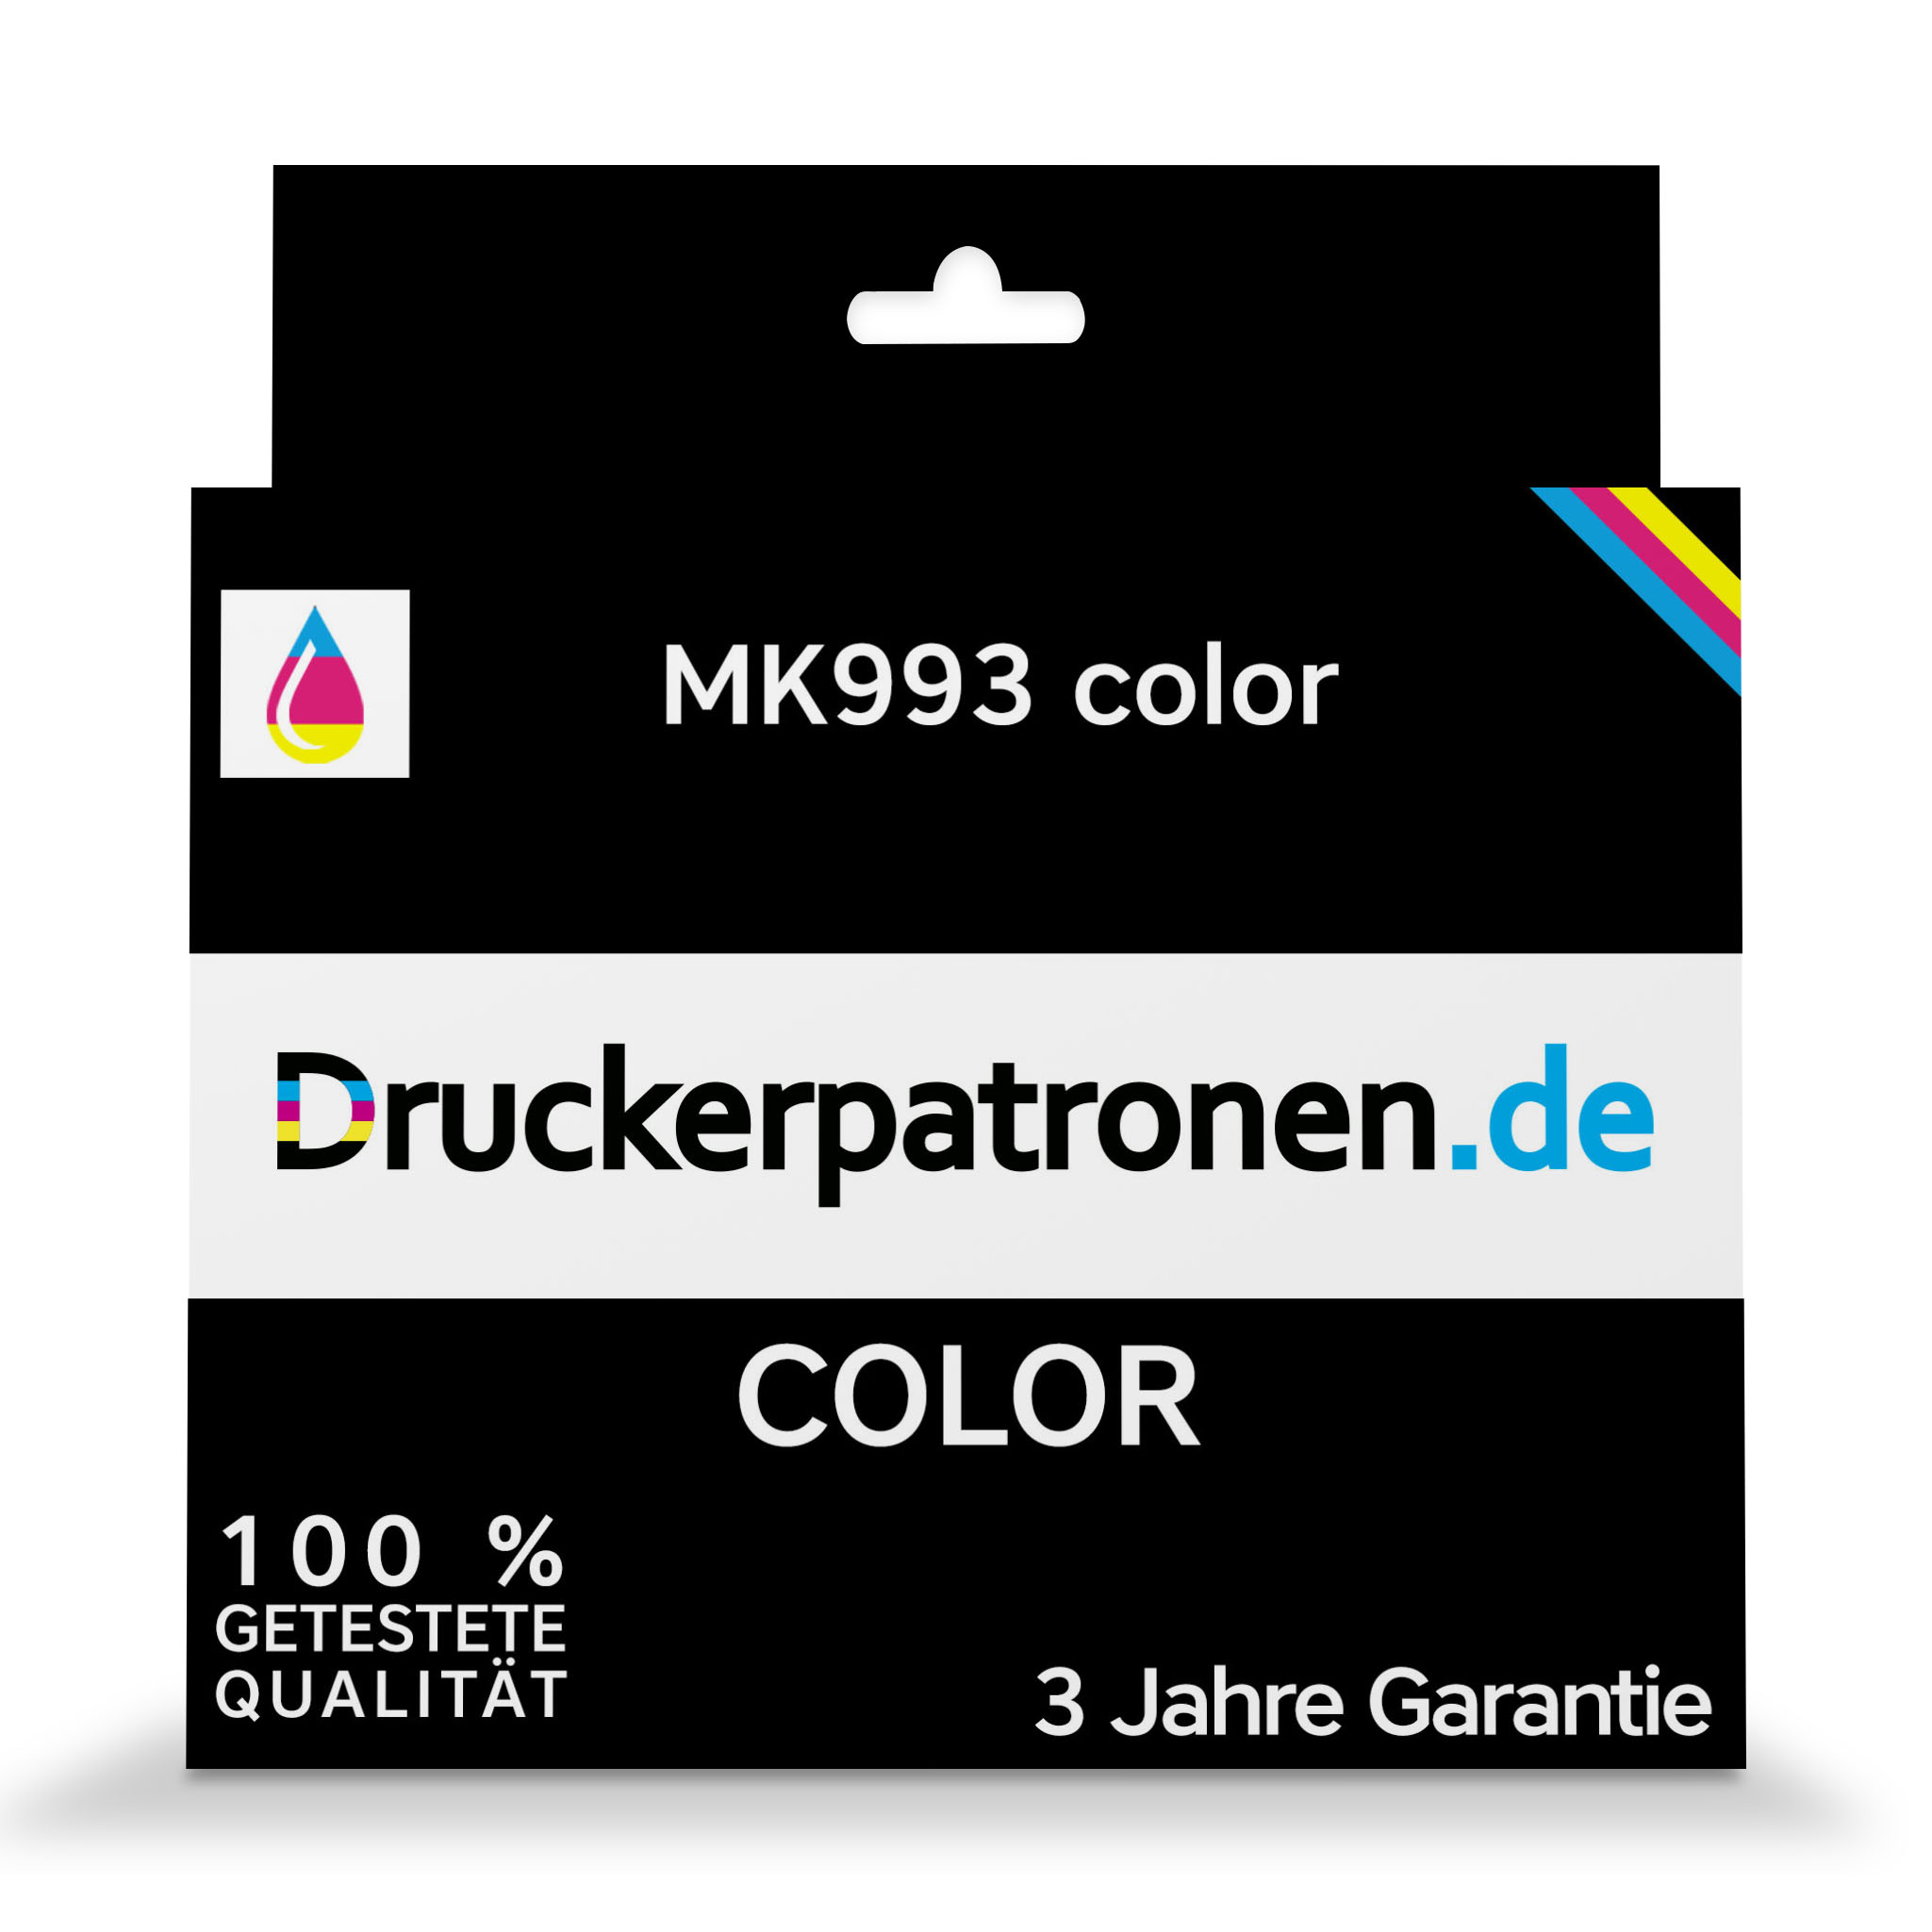 MK993 color